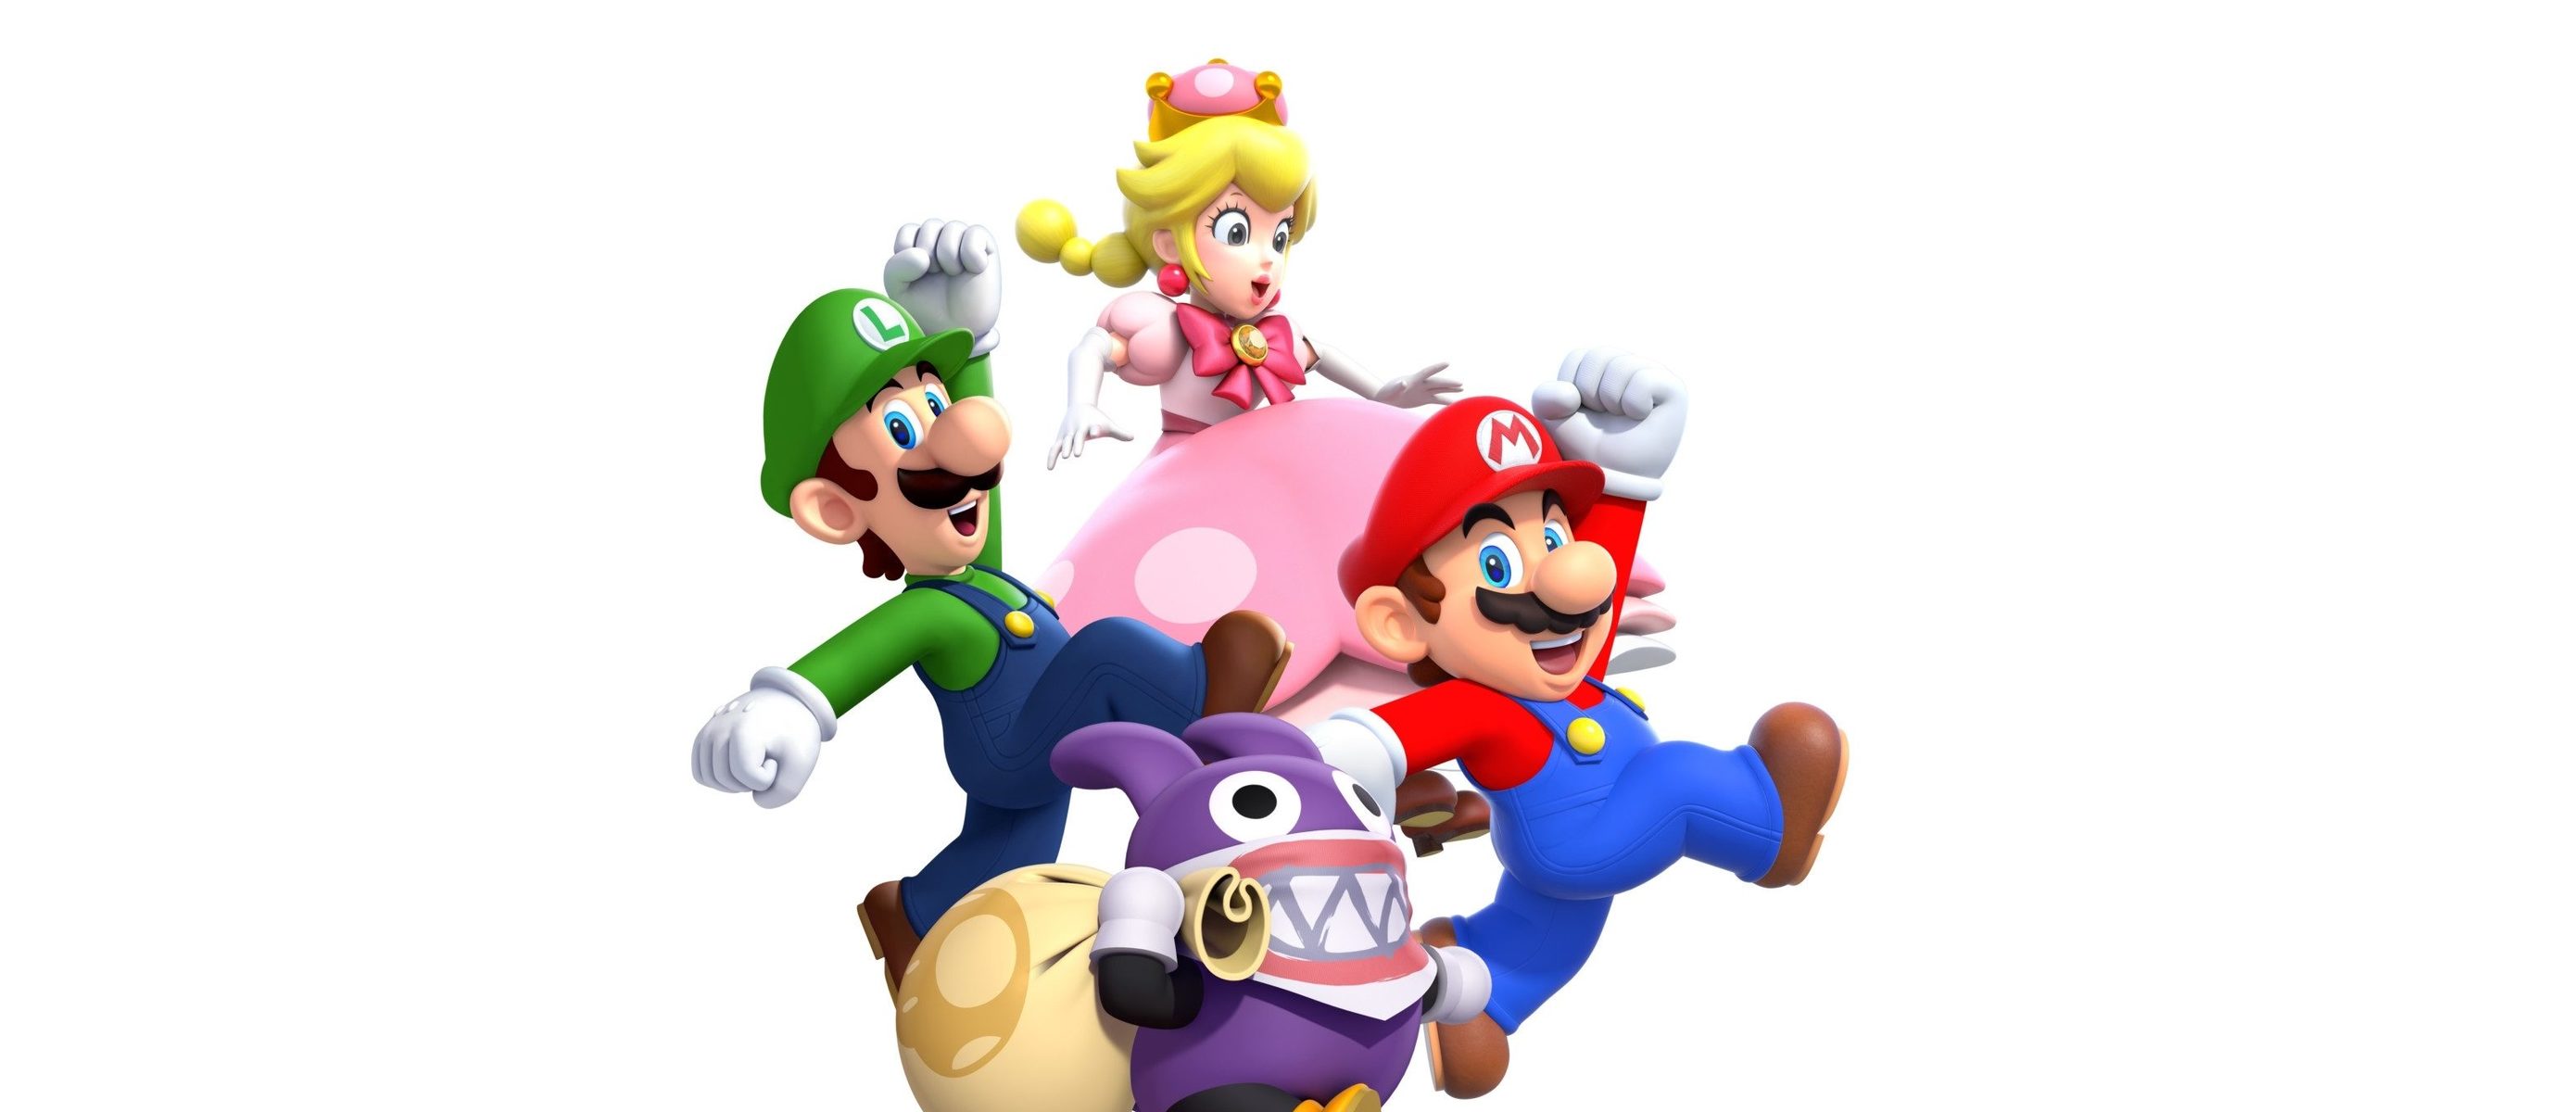 Mario bros 5. Super Mario Bros Nintendo Switch. New super Mario Bros u. New super Mario Bros Wii. Super Mario Wii u.